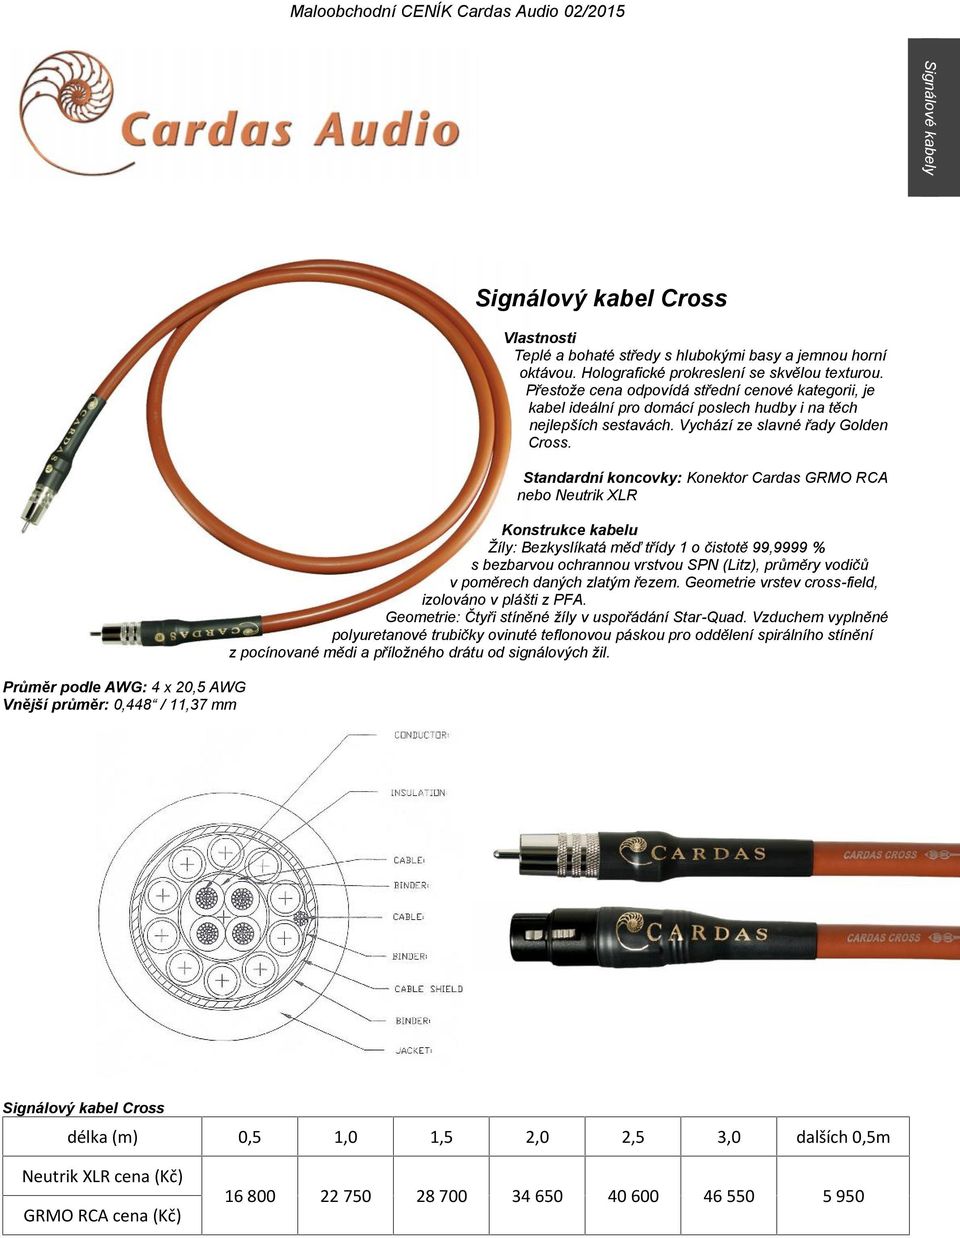 Standardní koncovky: Konektor Cardas GRMO RCA nebo Neutrik XLR Žíly: Bezkyslíkatá měď třídy 1 o čistotě 99,9999 % s bezbarvou ochrannou vrstvou SPN (Litz), průměry vodičů v poměrech daných zlatým